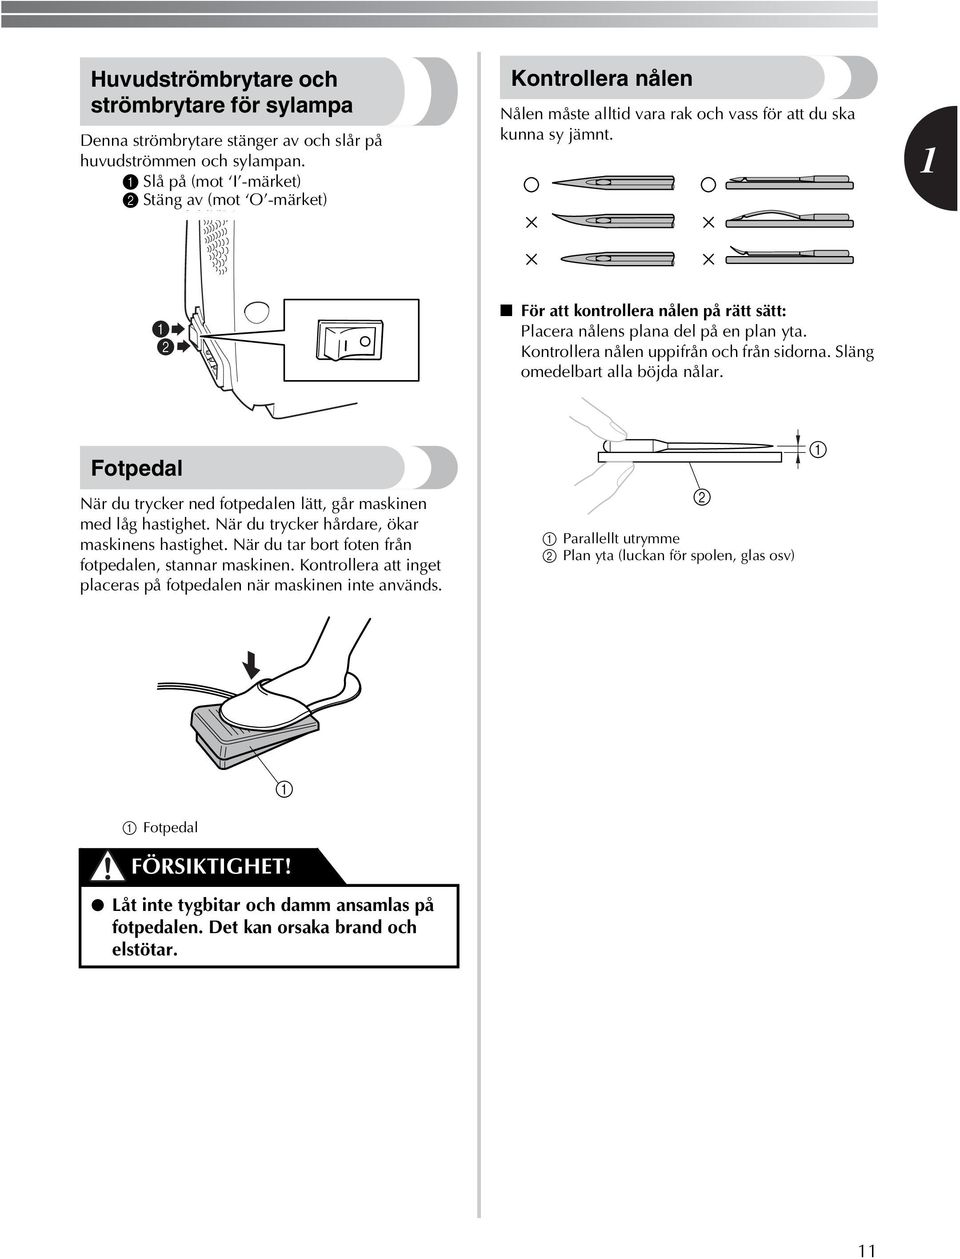 För att kontrollera nålen på rätt sätt: Placera nålens plana del på en plan yta. Kontrollera nålen uppifrån och från sidorna. Släng omedelbart alla böjda nålar.